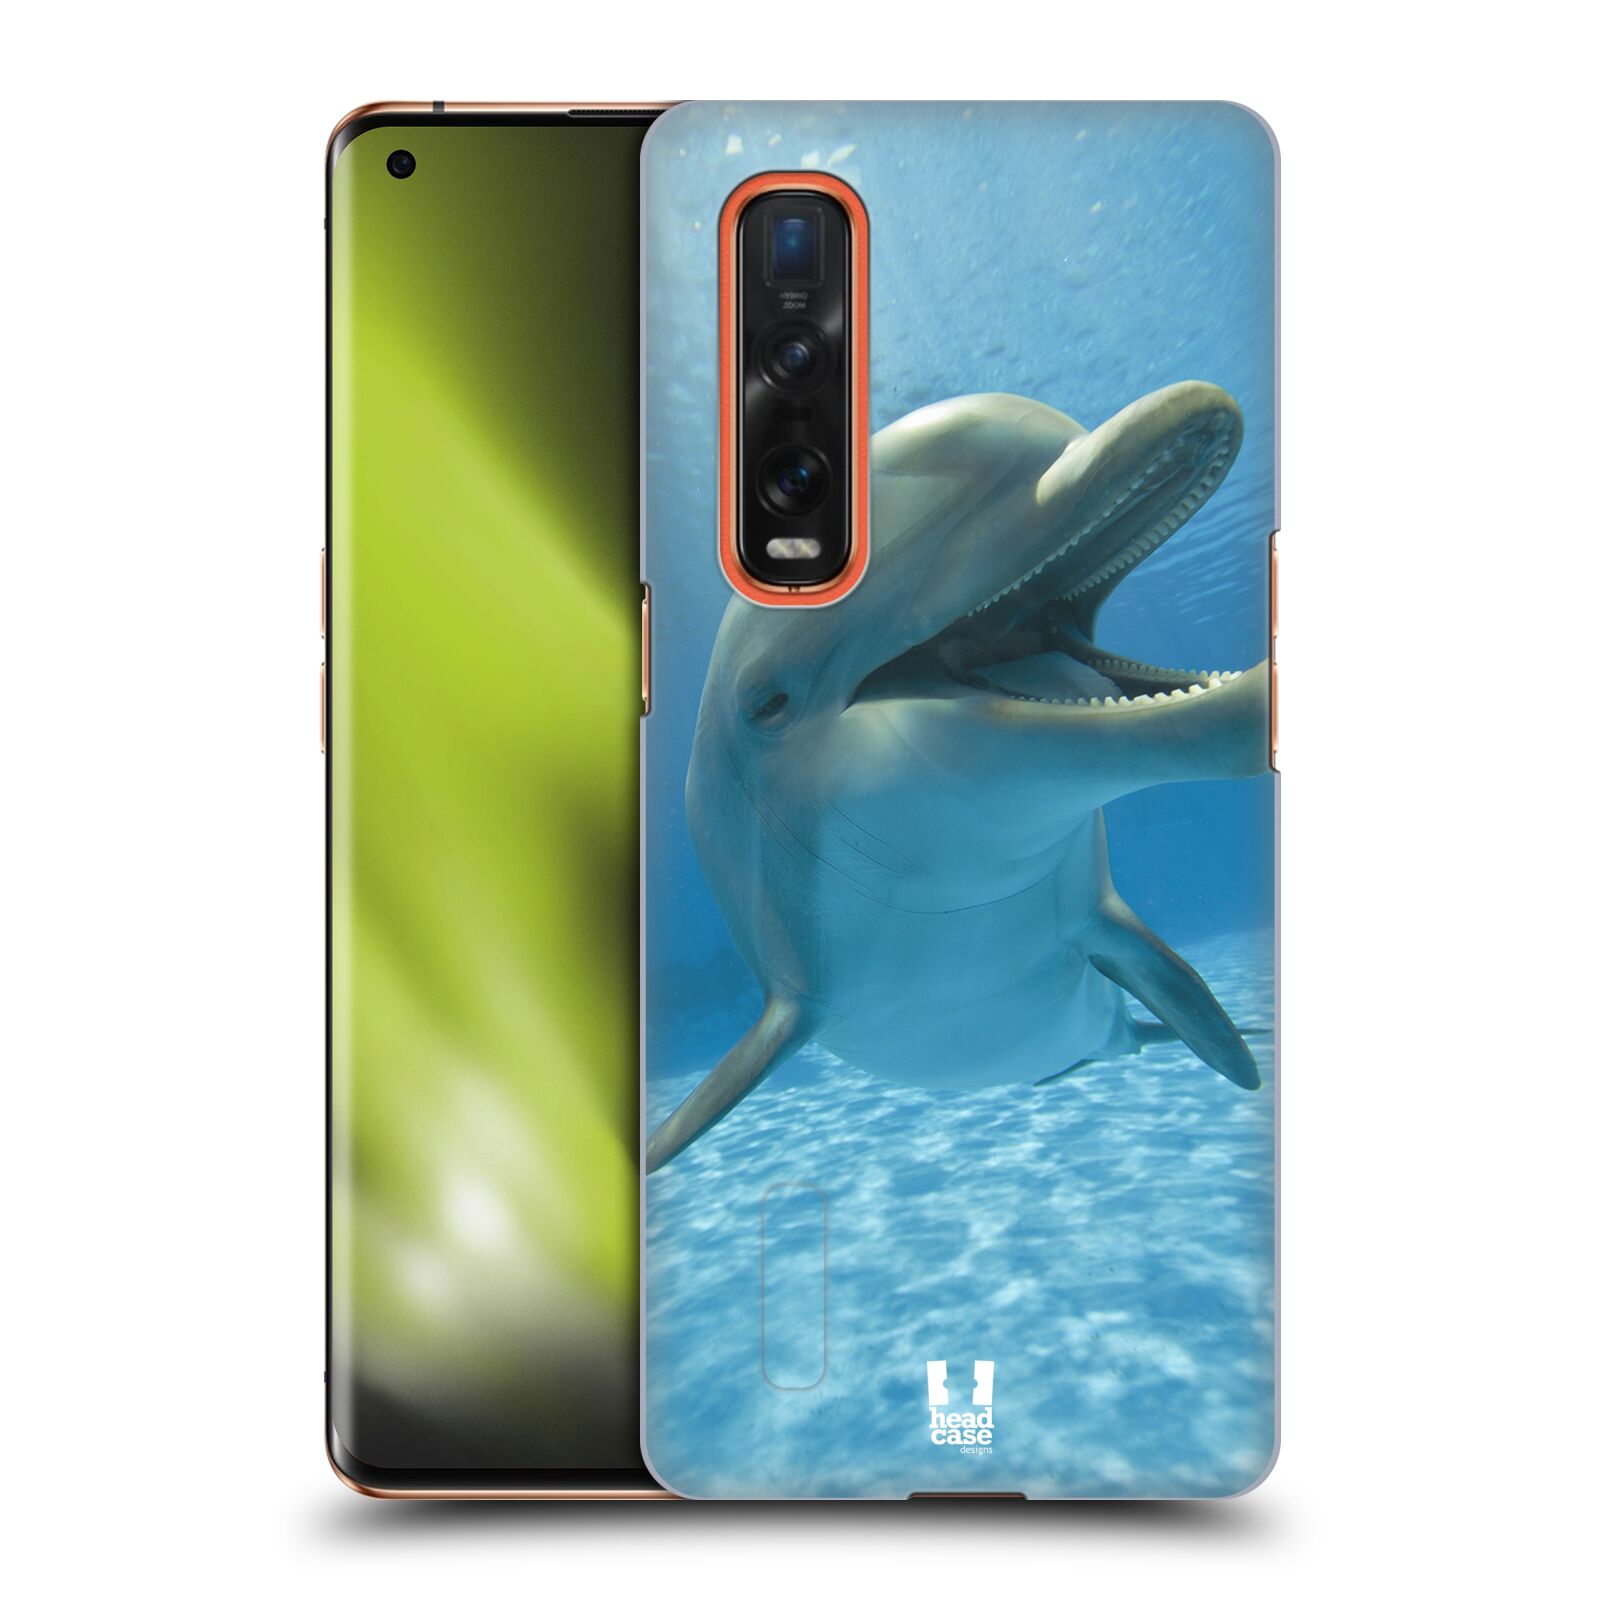 Zadní obal pro mobil Oppo Find X2 PRO - HEAD CASE - Svět zvířat delfín v moři